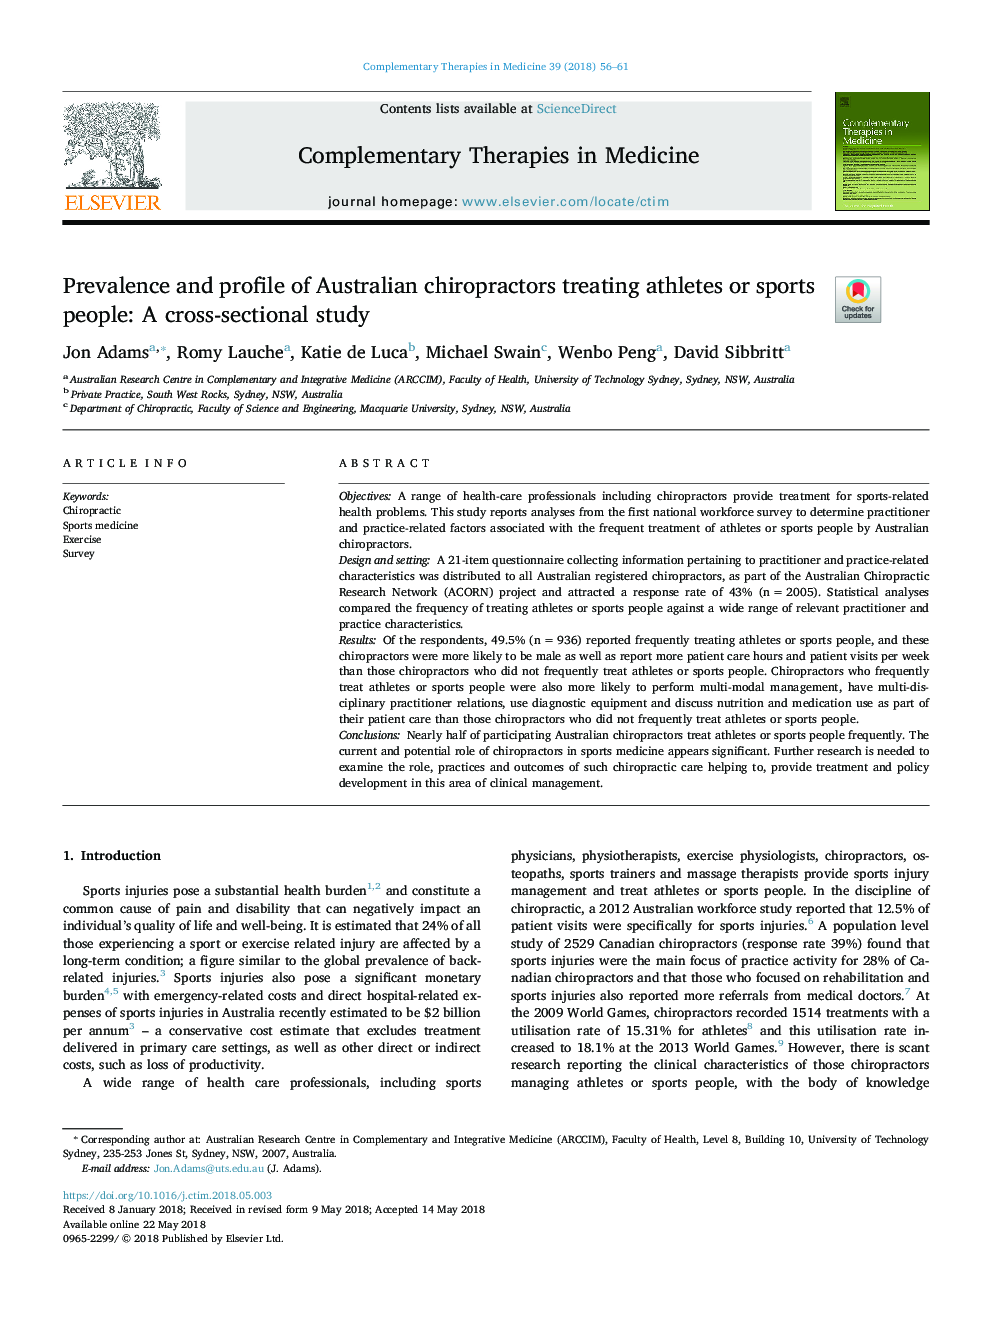 شیوع و ویرایش کیروپراکتیان استرالیا در درمان ورزشکاران یا افراد ورزشی: یک مطالعه مقطعی 